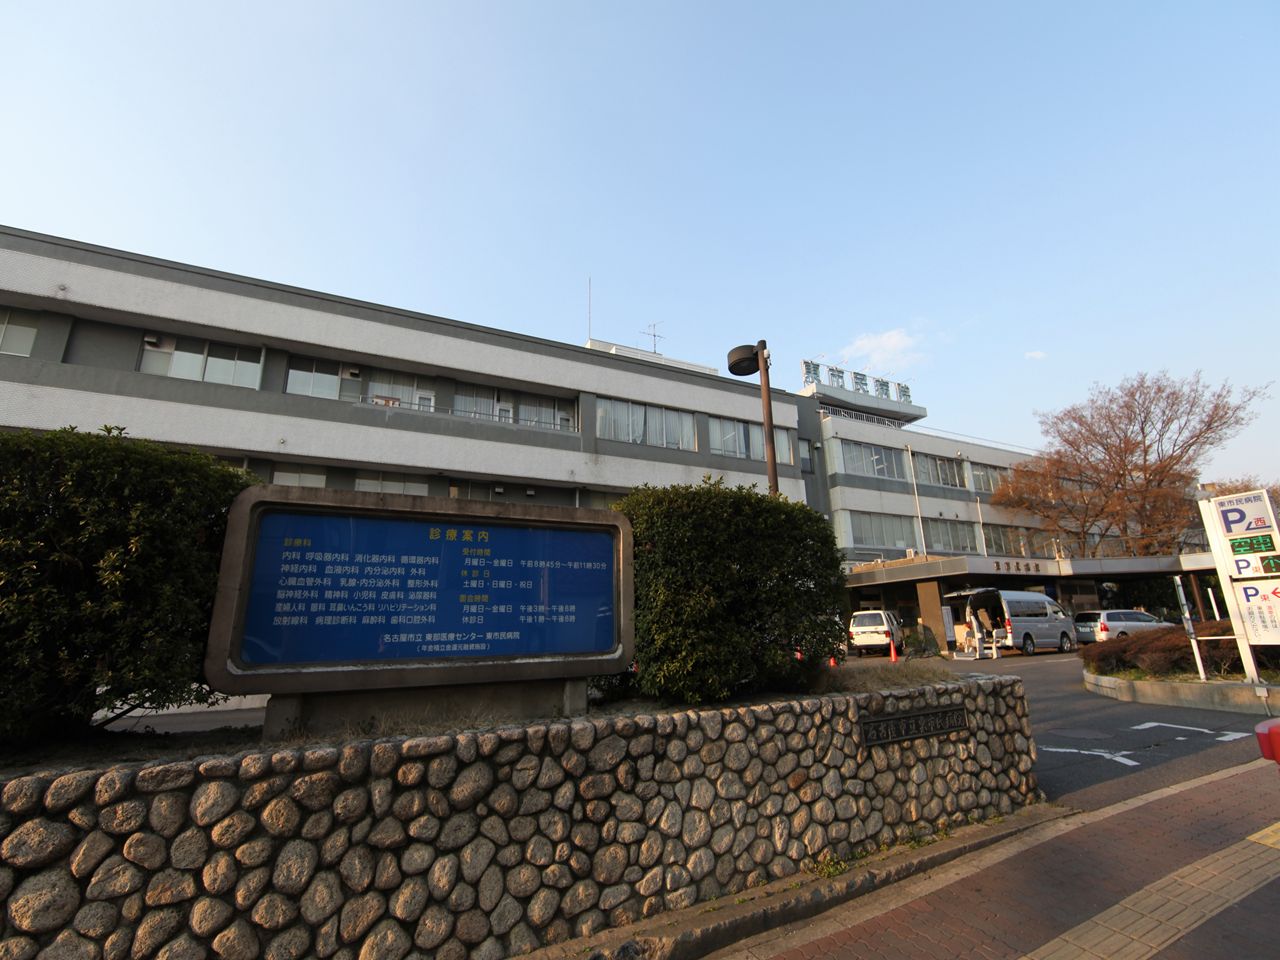 Hospital. 585m to Nagoya Municipal Eastern Medical Center (General Hospital) (hospital)